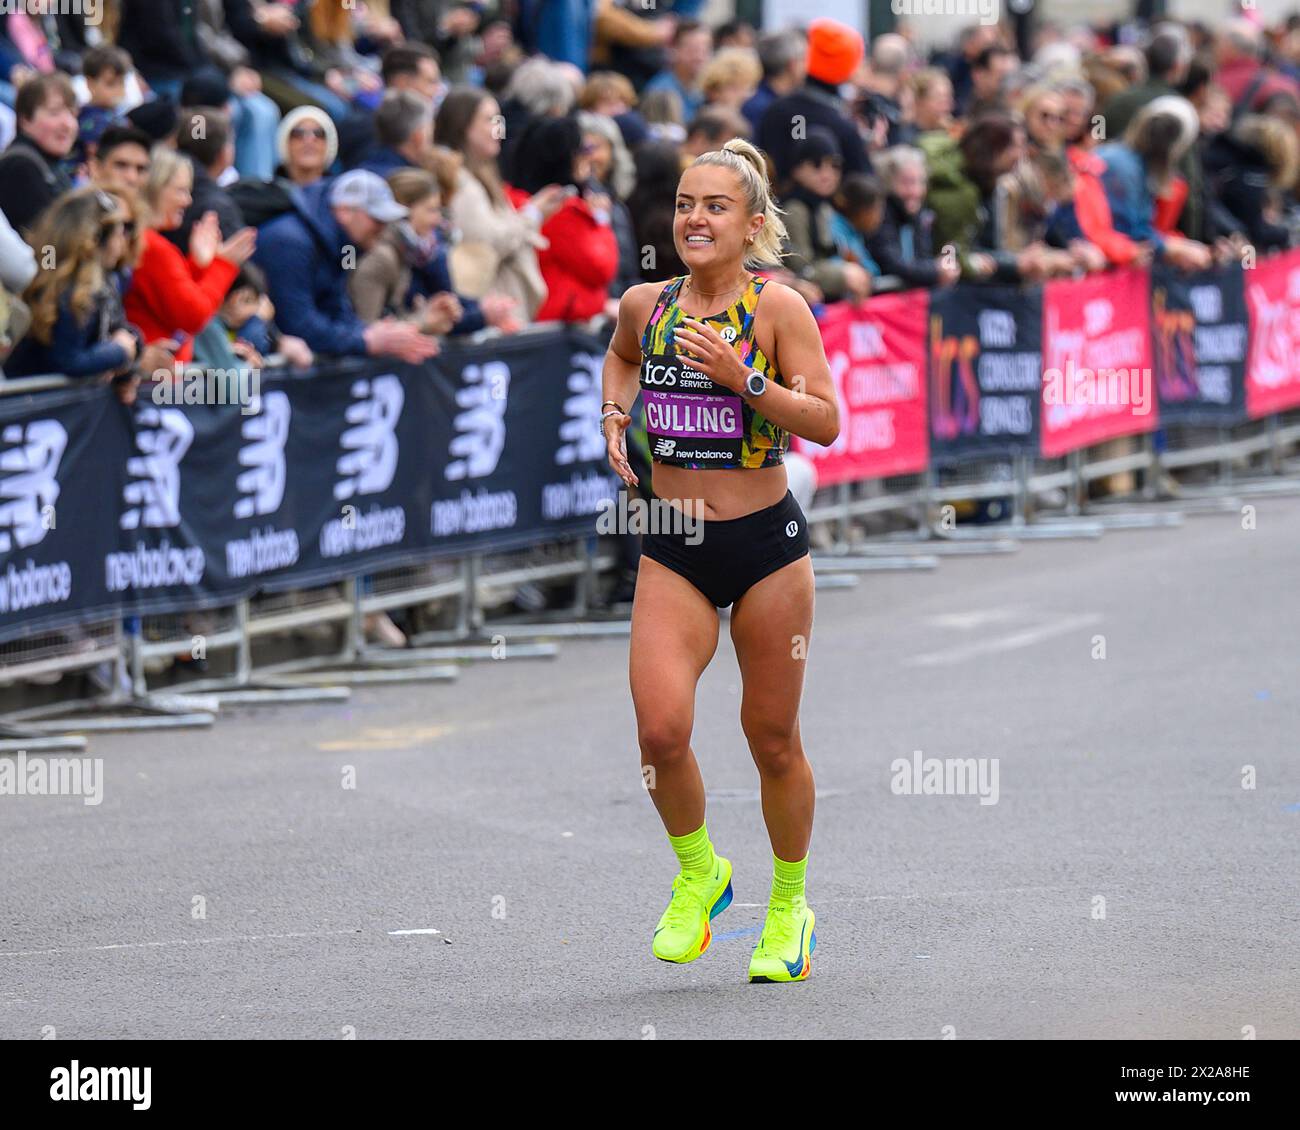 Londres, Royaume-Uni. 21 avril 2024. Une souriante Anya Cullings, qui a commencé à courir pendant le confinement du COVID pour sa santé mentale, sur la ligne droite du marathon de Londres d'aujourd'hui, terminant dans un temps de 2 heures 44 minutes, s'est classée 45e au classement général. Anya a couru son premier marathon de Londres en 2019, en un temps de 4 heures 34 minutes. Crédit : MartinJPalmer/Alamy Live News Banque D'Images